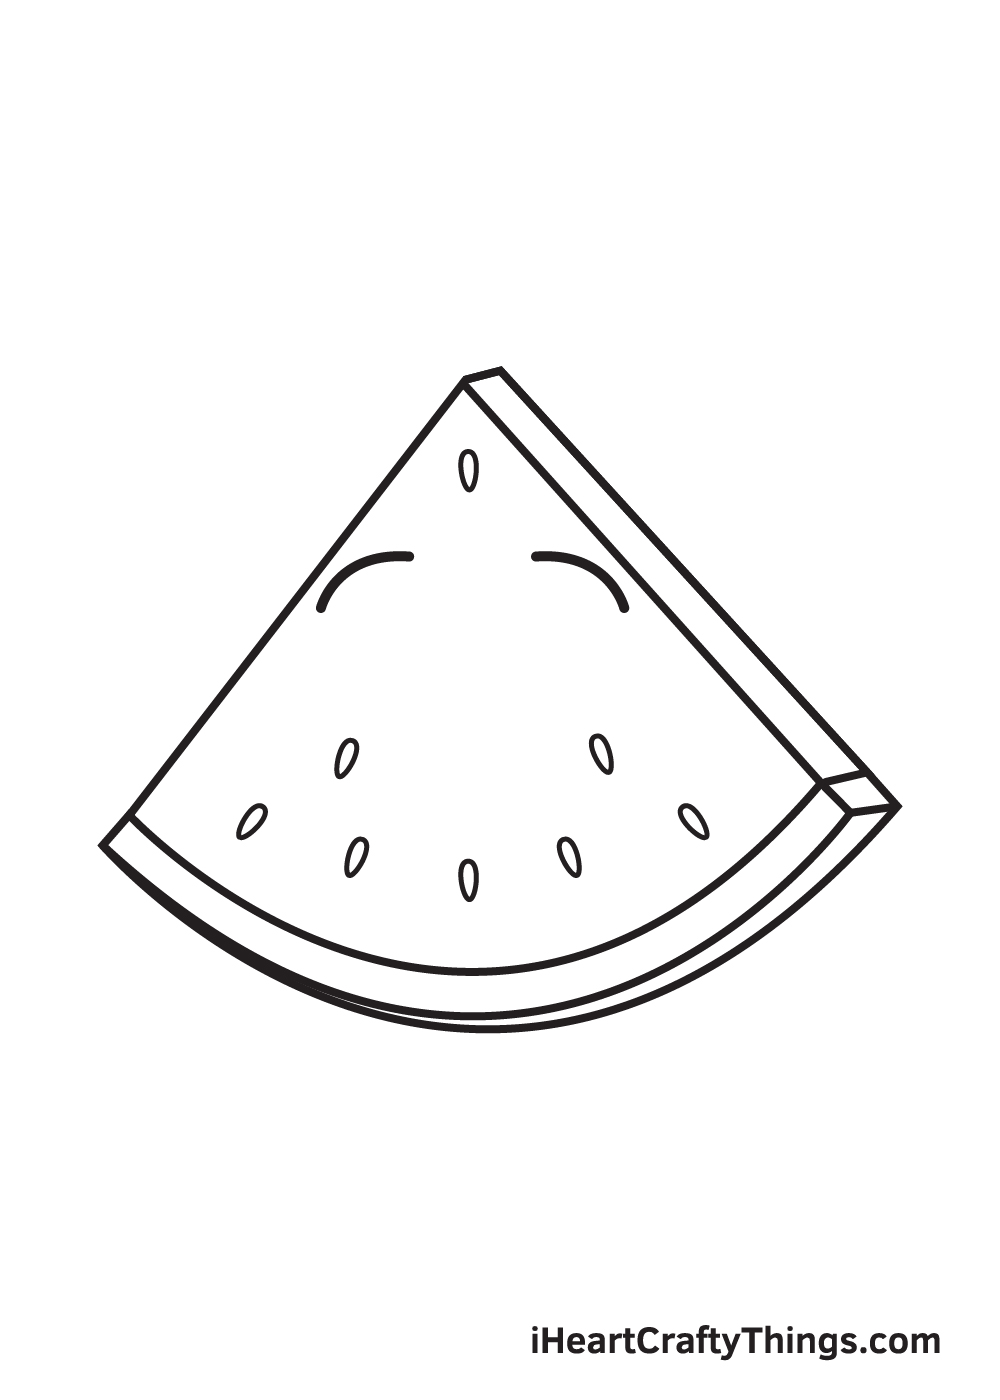 Watermelon DRAWING – STEP 6 - Hướng dẫn cách vẽ quả dưa hấu đơn giản với 9 bước cơ bản